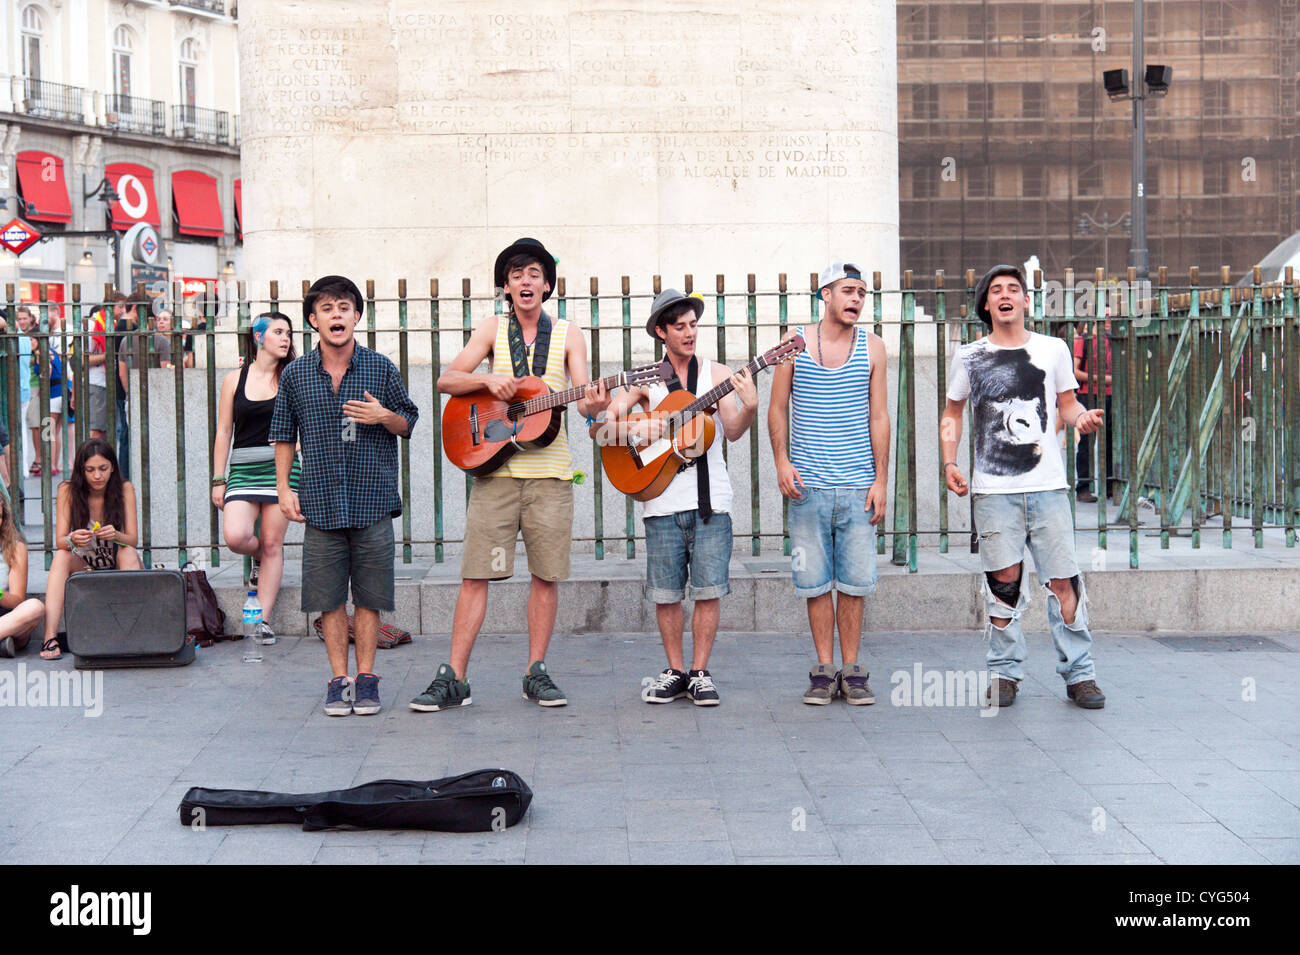 Les jeunes de la rue sur la place Puerta del Sol, Madrid, Espagne Banque D'Images